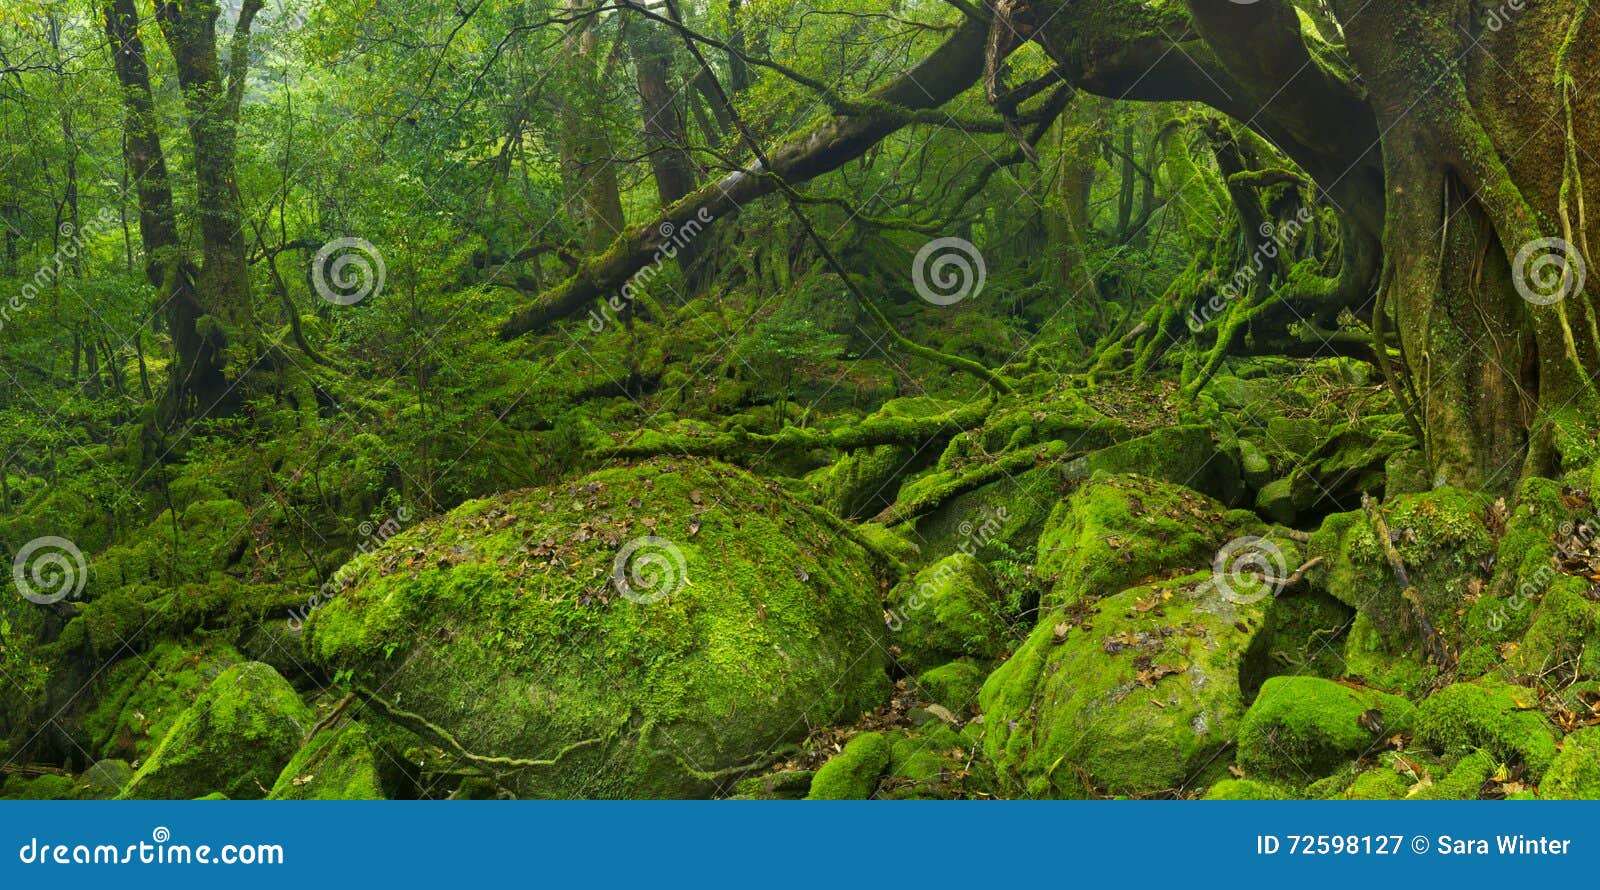 lush rainforest along shiratani unsuikyo trail on yakushima